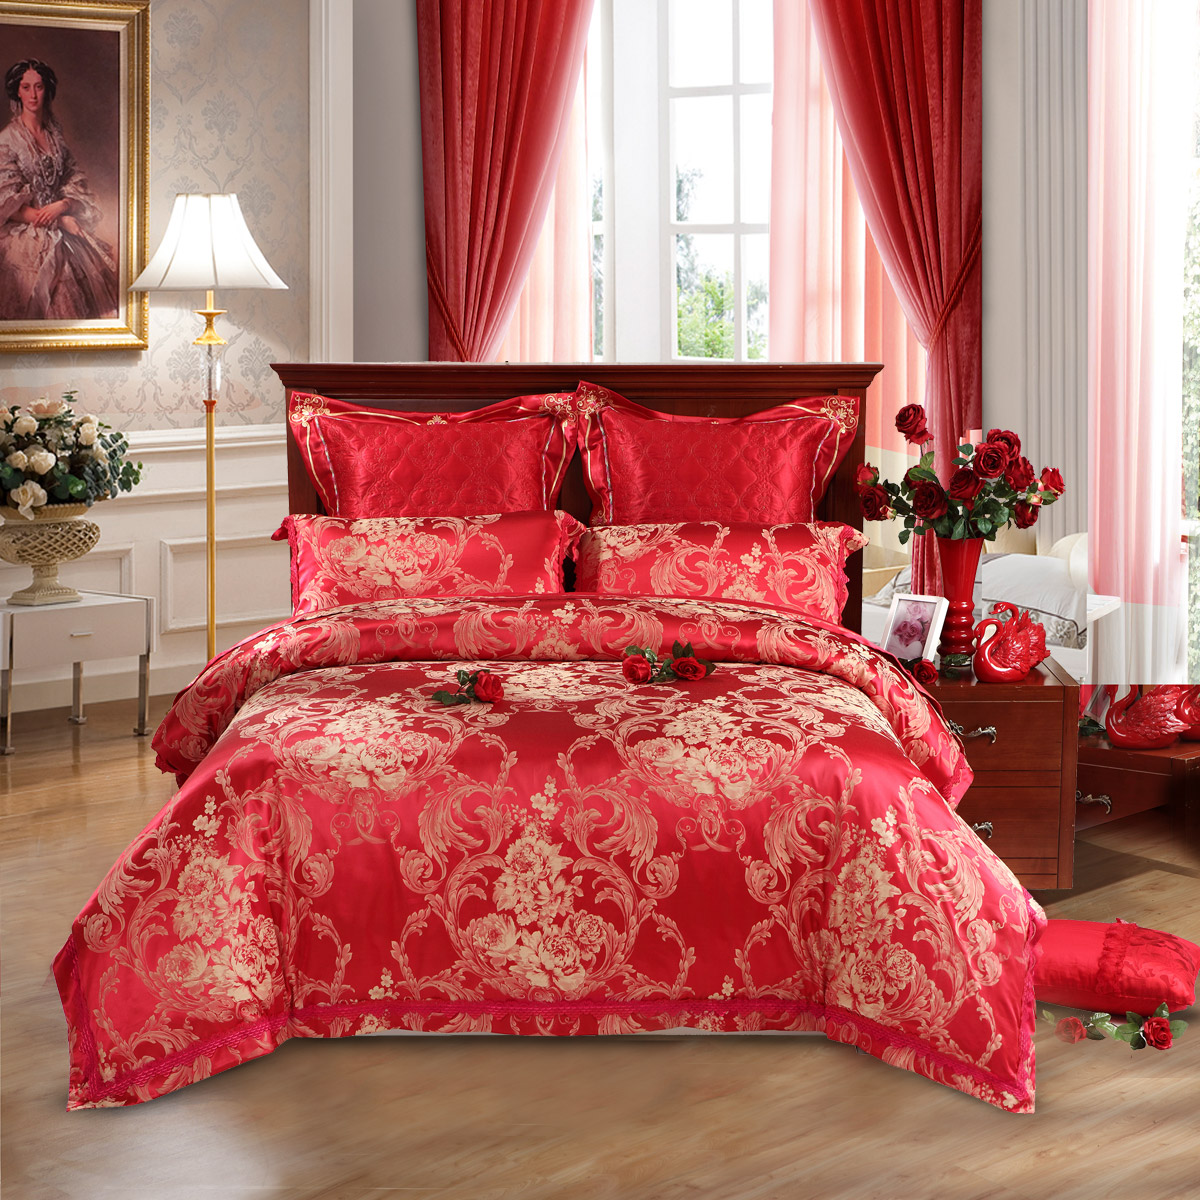 水星家纺婚庆竹棉提花贡缎四件套良缘双人大红结婚床品1.8米床品